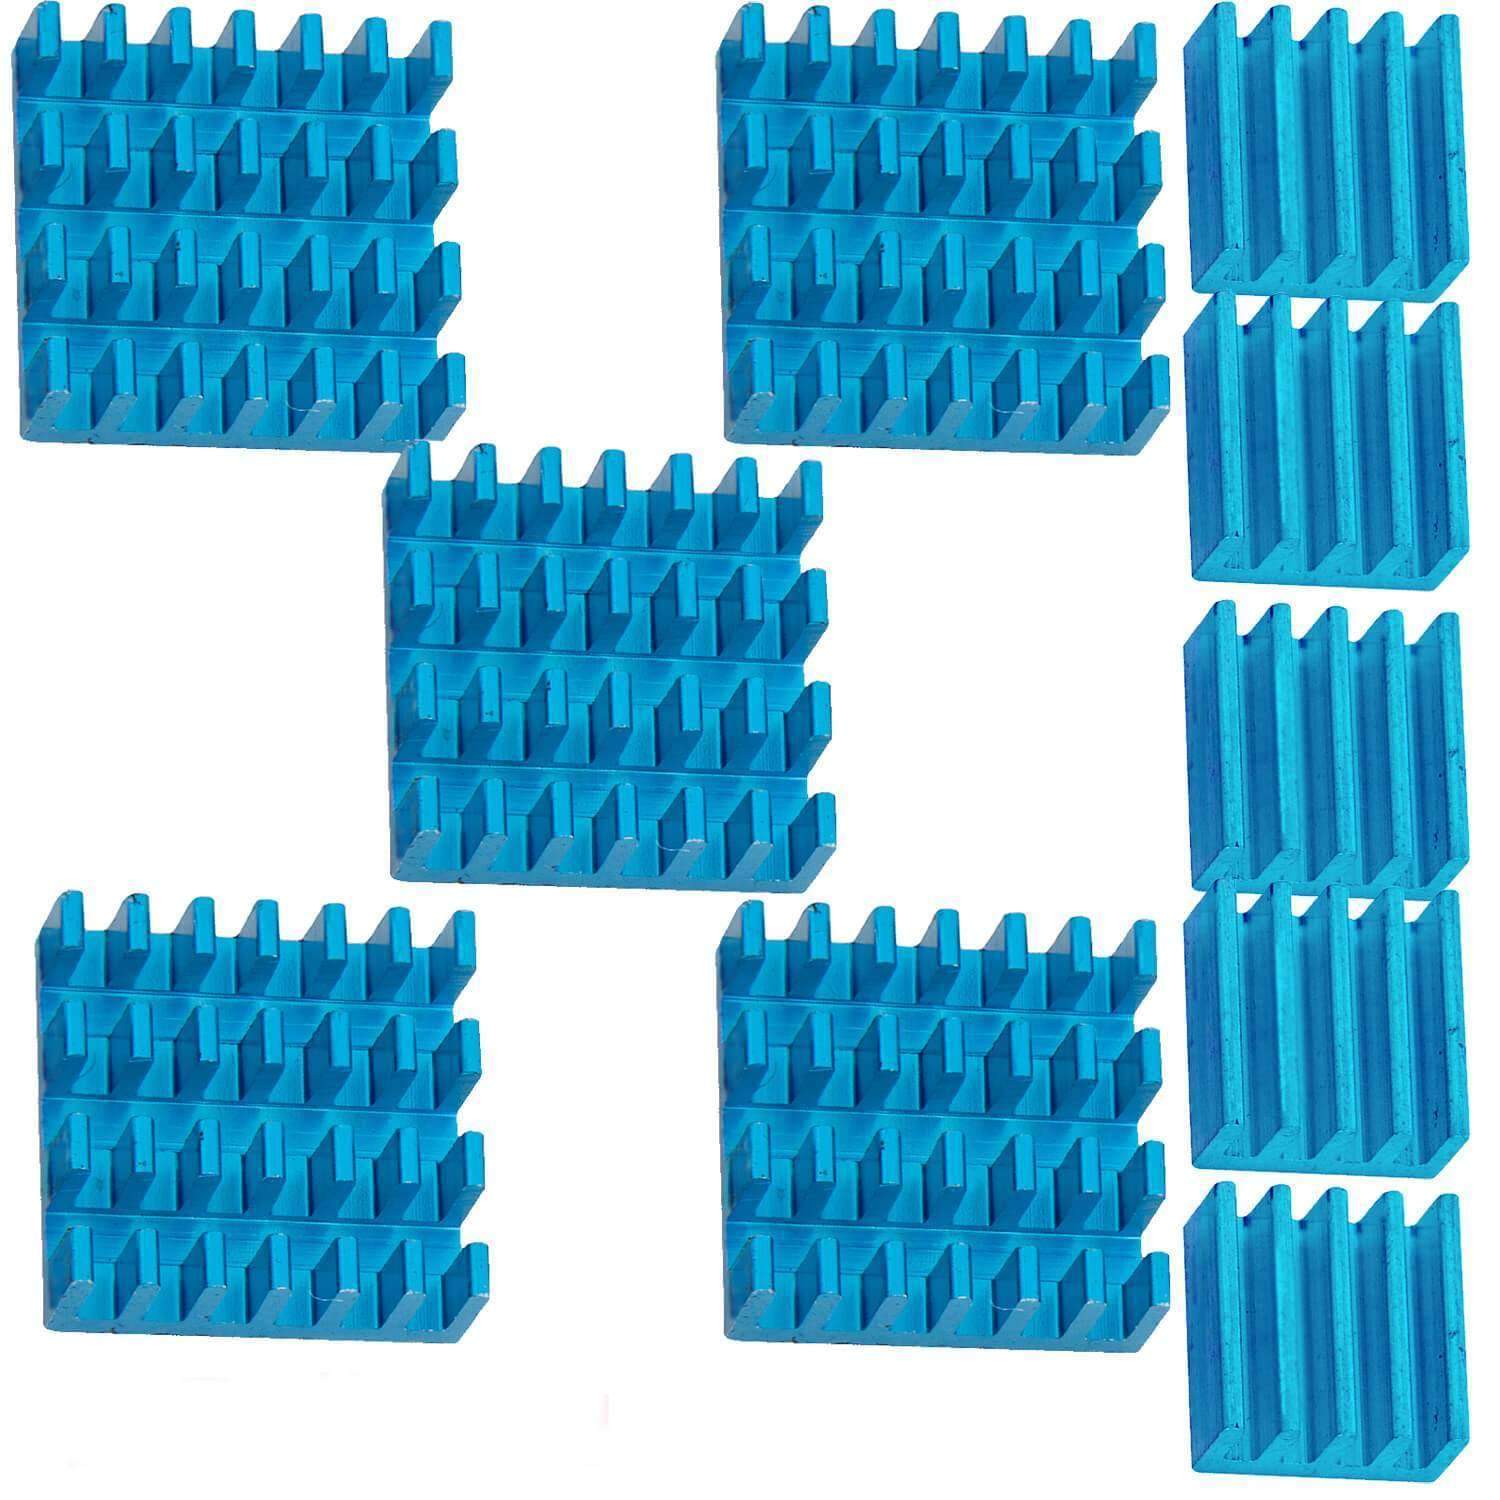 2er Set blaue Alu Kühlkörper passiv für Raspberry Pi 3 mit wärmeleitender Spezialklebefolie RaspberryPi Zubehör AZ-Delivery 5x Set 